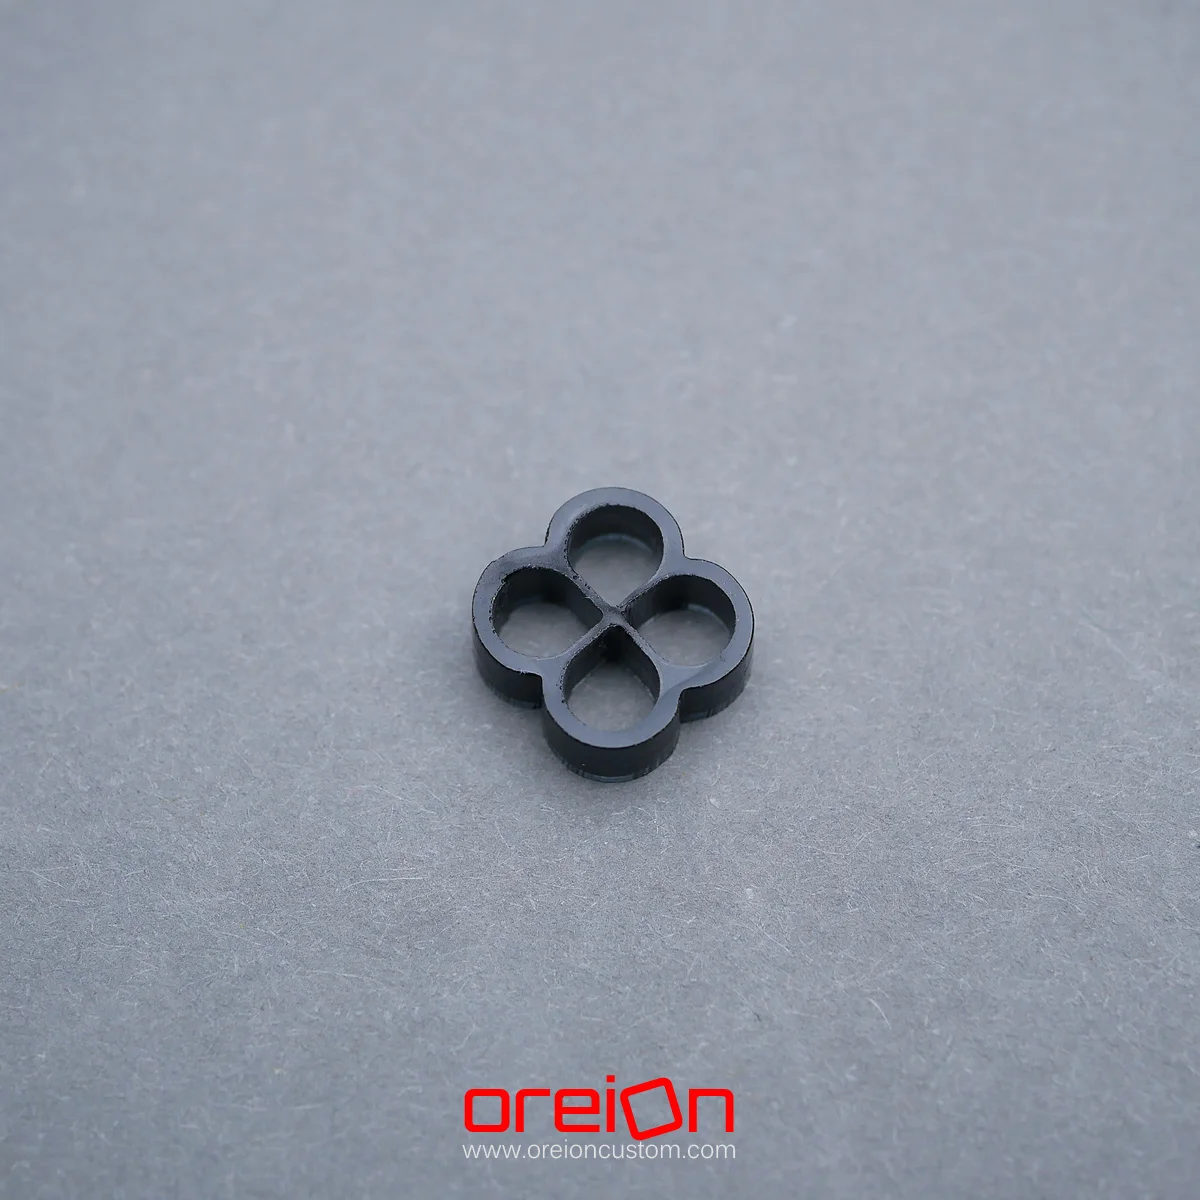 oreioncustom Cable Comb – black Closed 4 pin